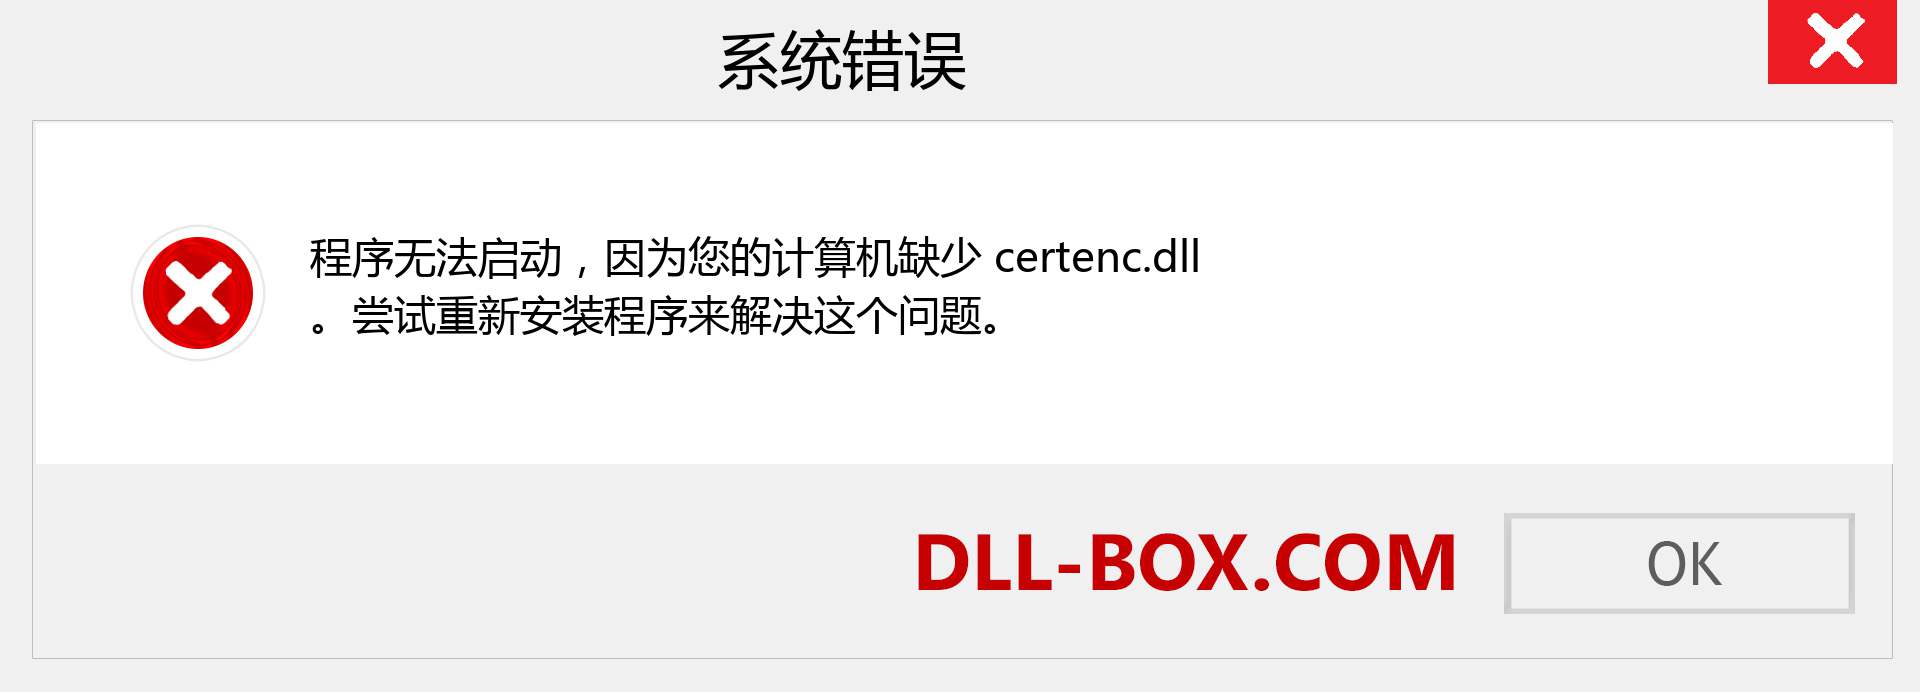 certenc.dll 文件丢失？。 适用于 Windows 7、8、10 的下载 - 修复 Windows、照片、图像上的 certenc dll 丢失错误